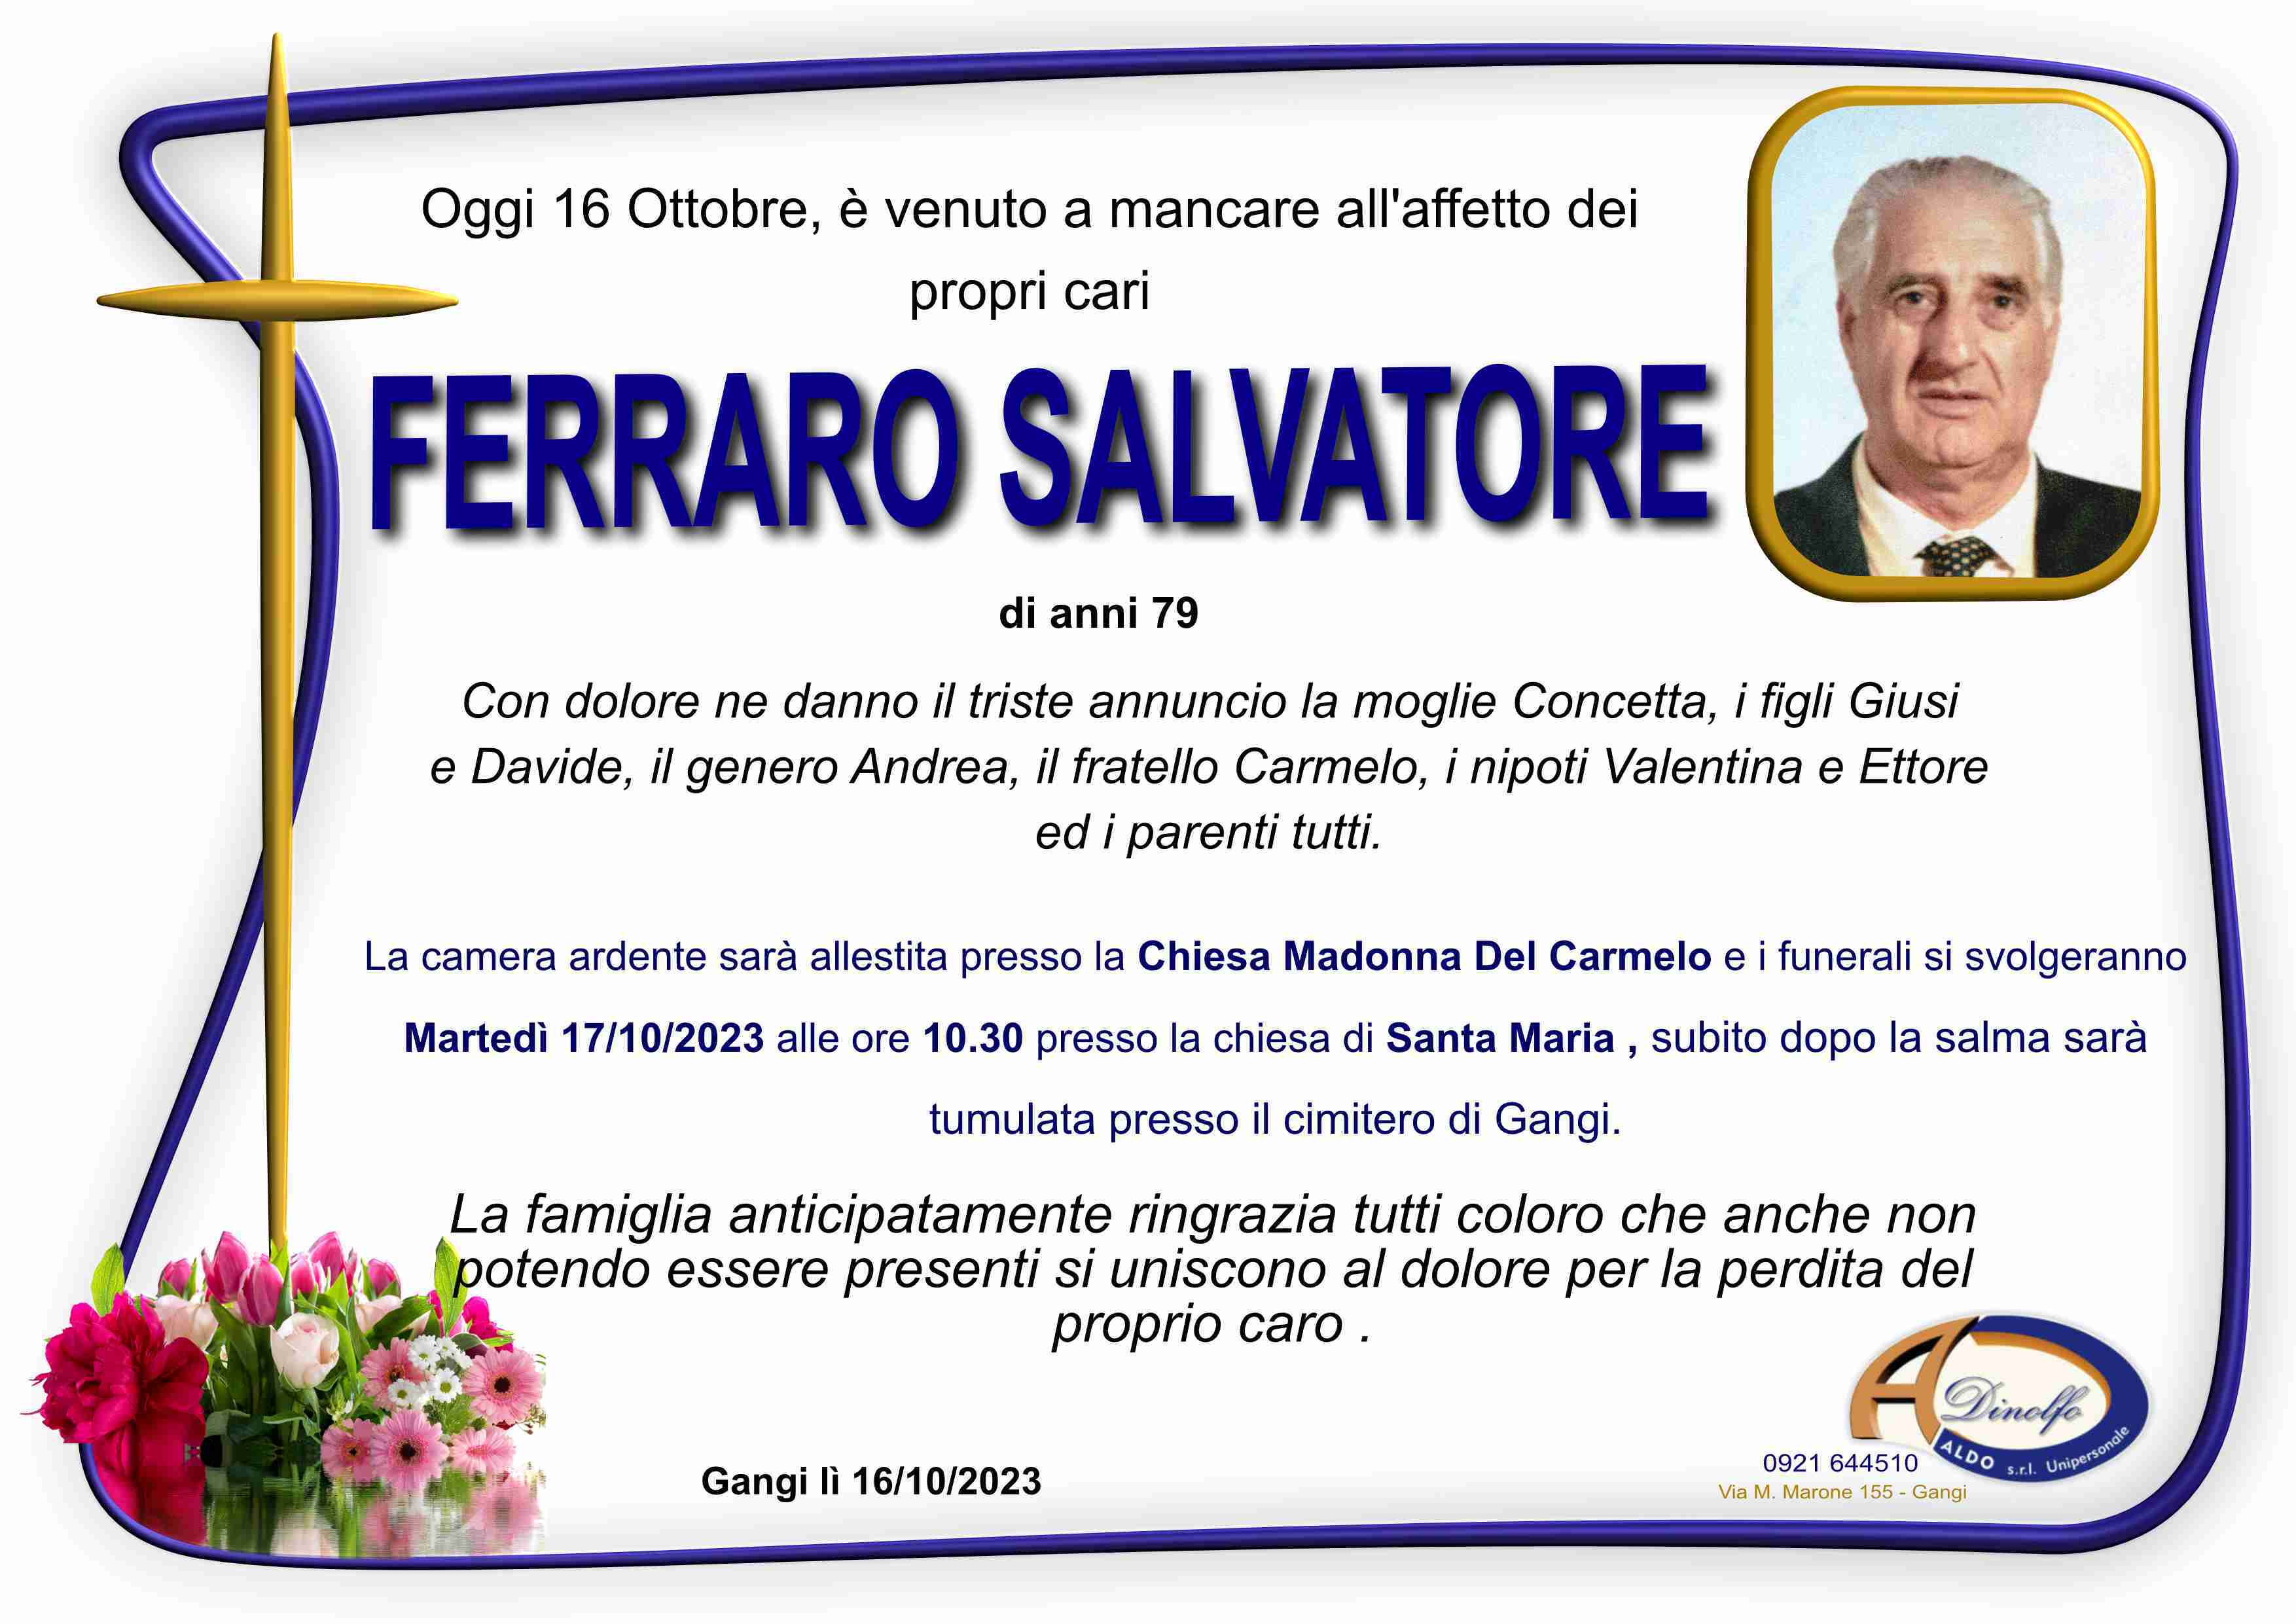 Salvatore Ferraro